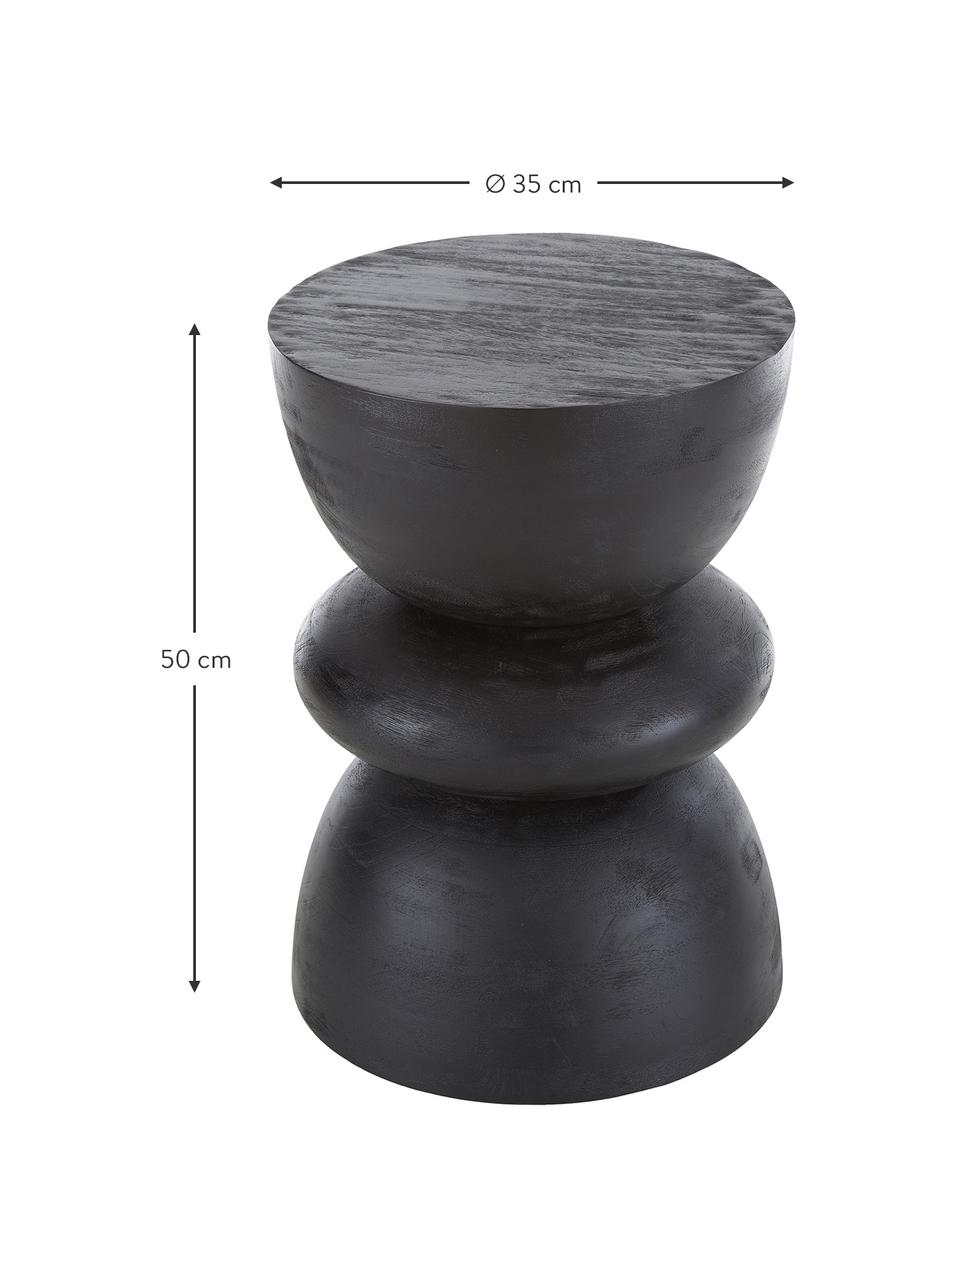 Pomocný stolík z mangového dreva Benno, Masívne mangové drevo, lakované, Mangové drevo, čierne lakované, Ø 35 x V 50 cm